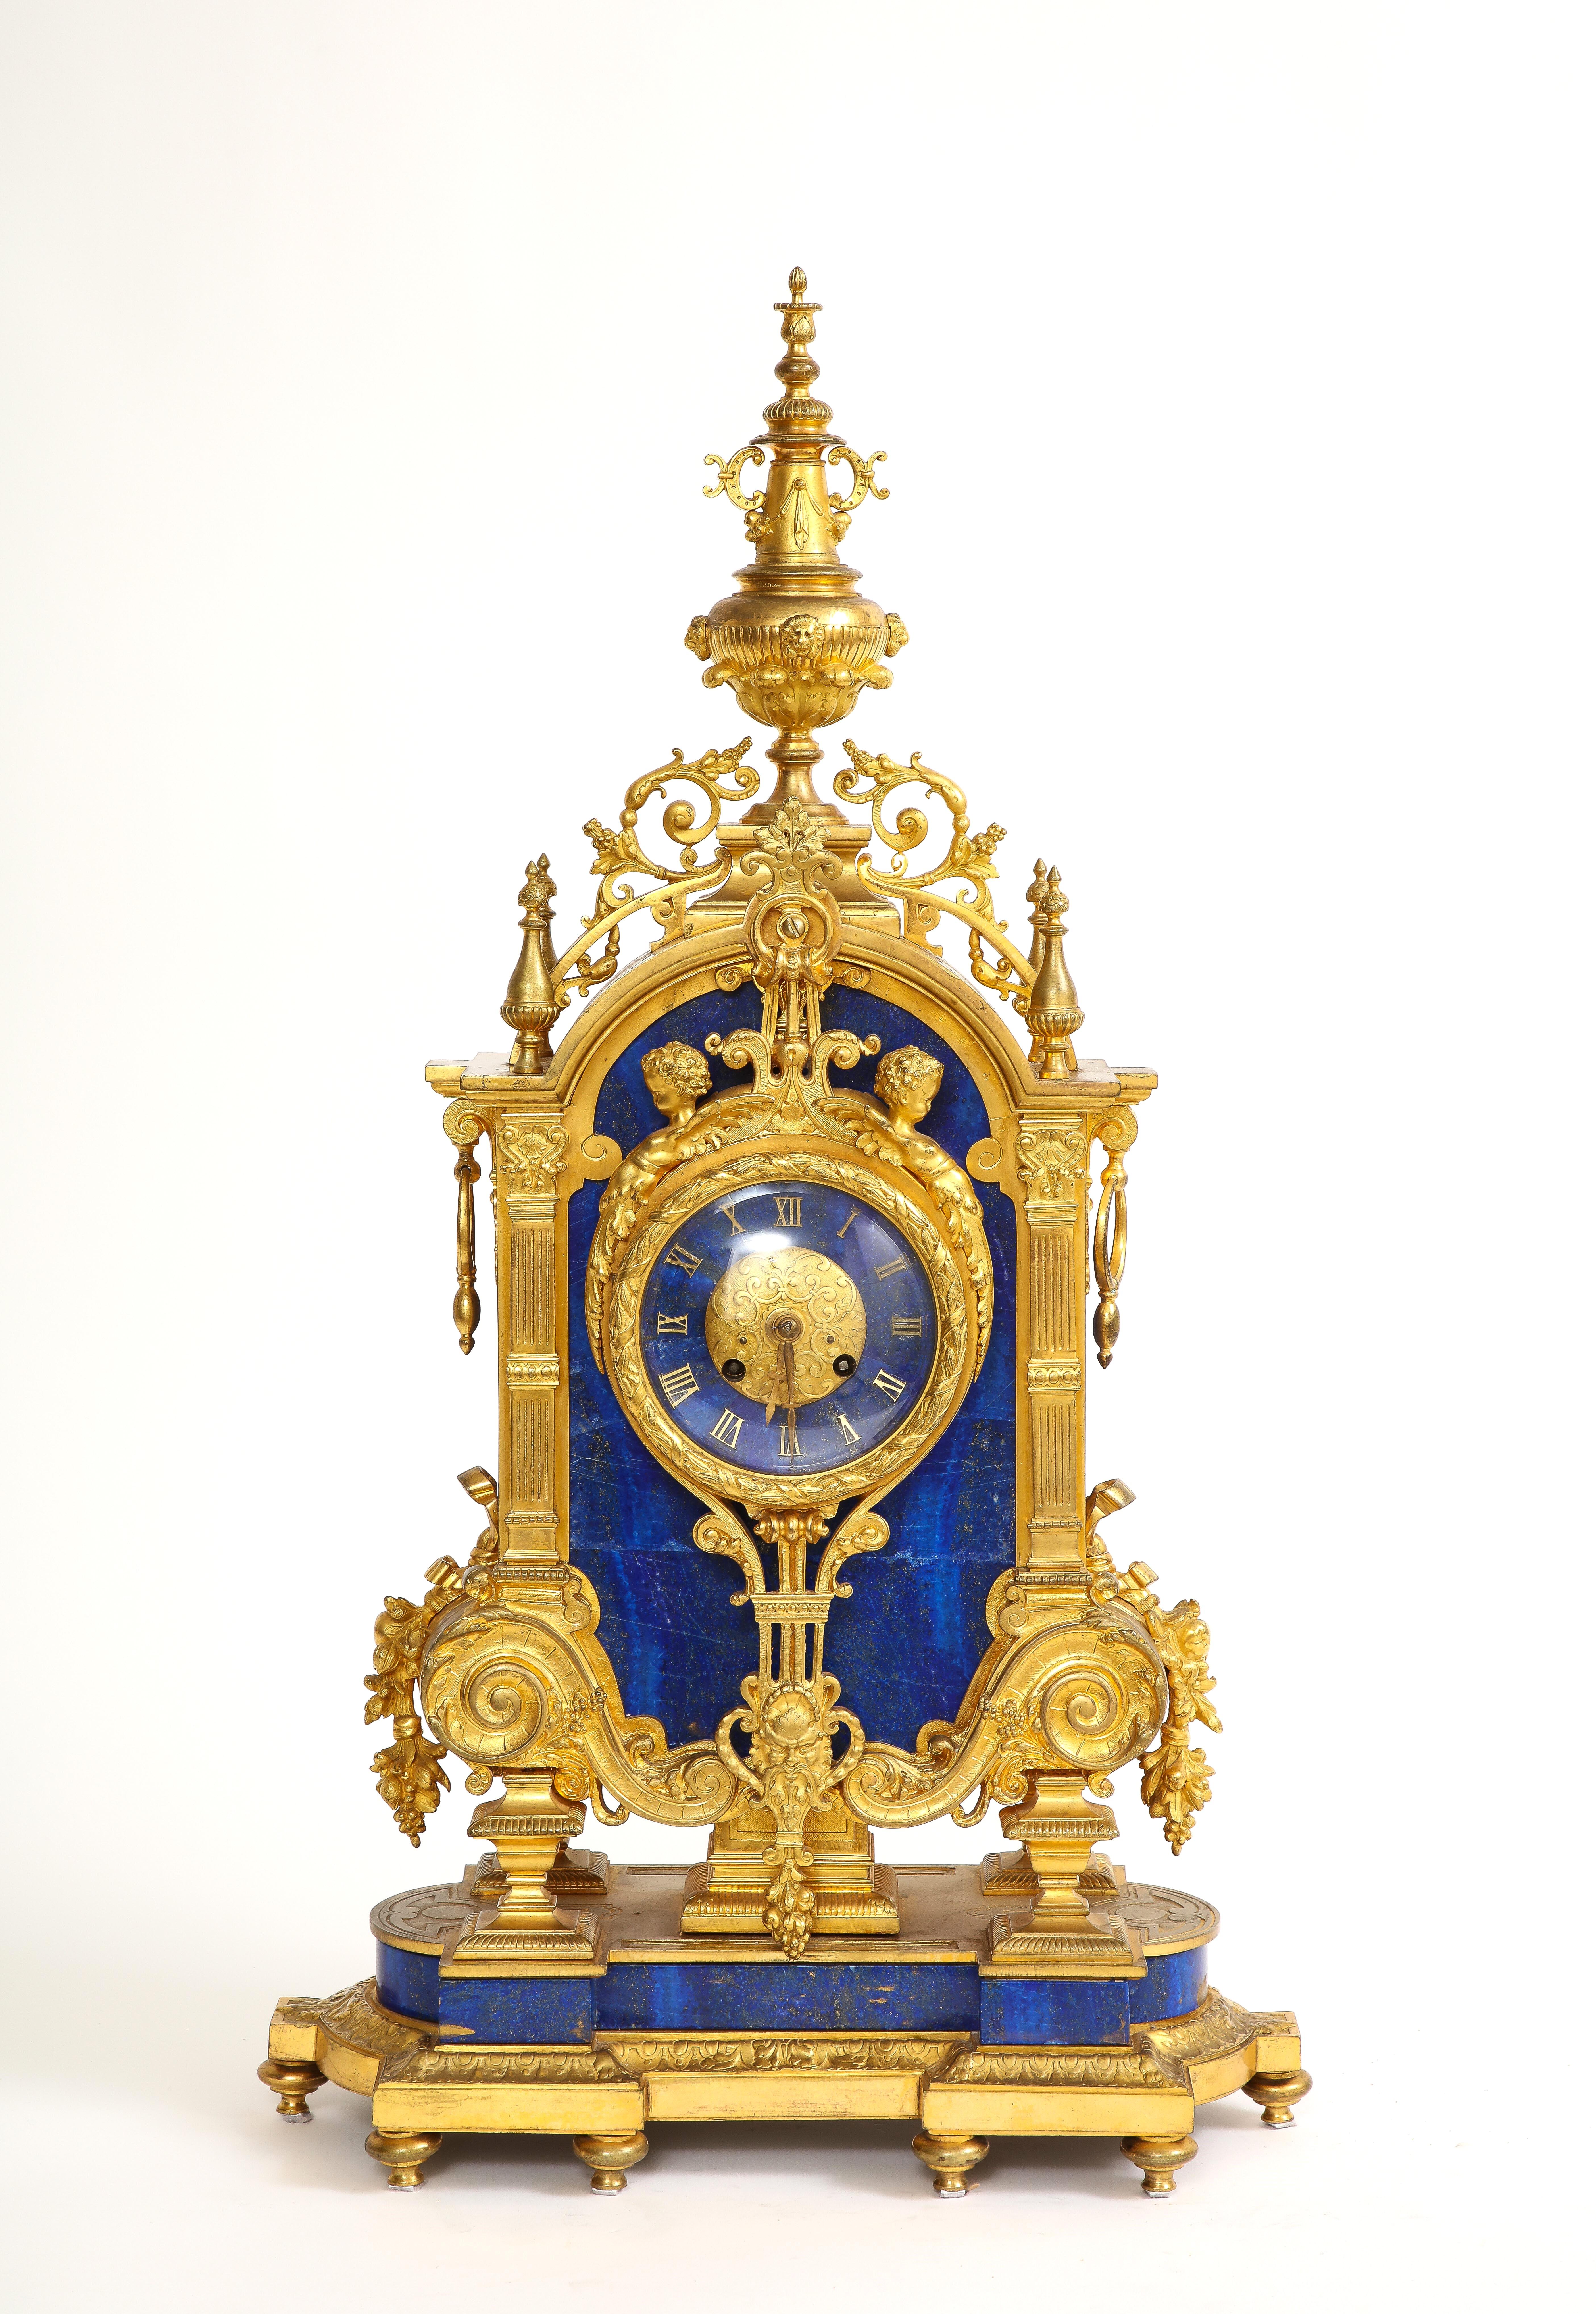 Une incroyable et très rare pendule en lapis-lazuli de style Louis XVI du XIXe siècle.  Il s'agit d'une superbe pièce d'art décoratif qui reflète les goûts luxueux de la monarchie française du XVIIIe siècle. L'horloge présente un design français